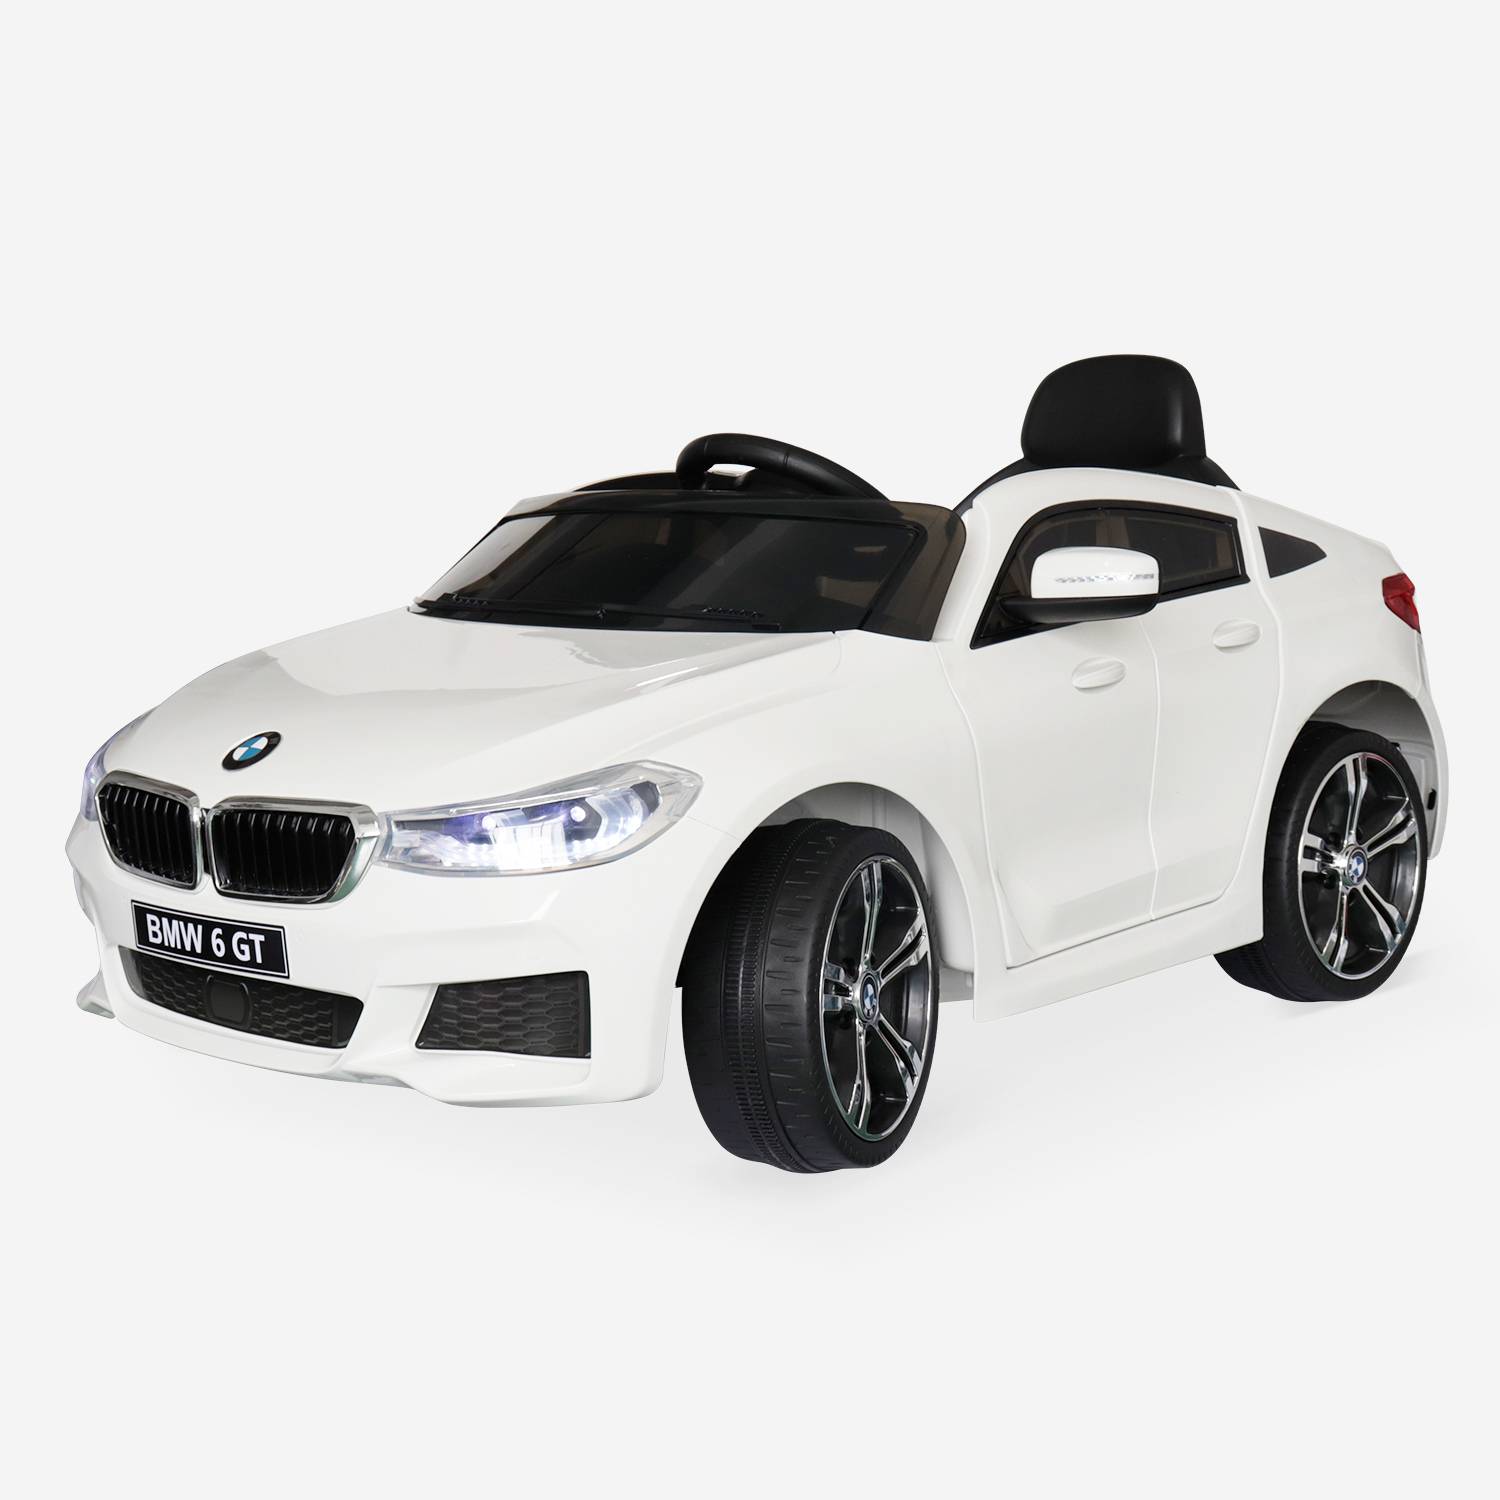 BMW Série 6 GT Gran Turismo blanche, voiture électrique pour enfants 12V 4 Ah, 1 place, avec autoradio et télécommande Photo2